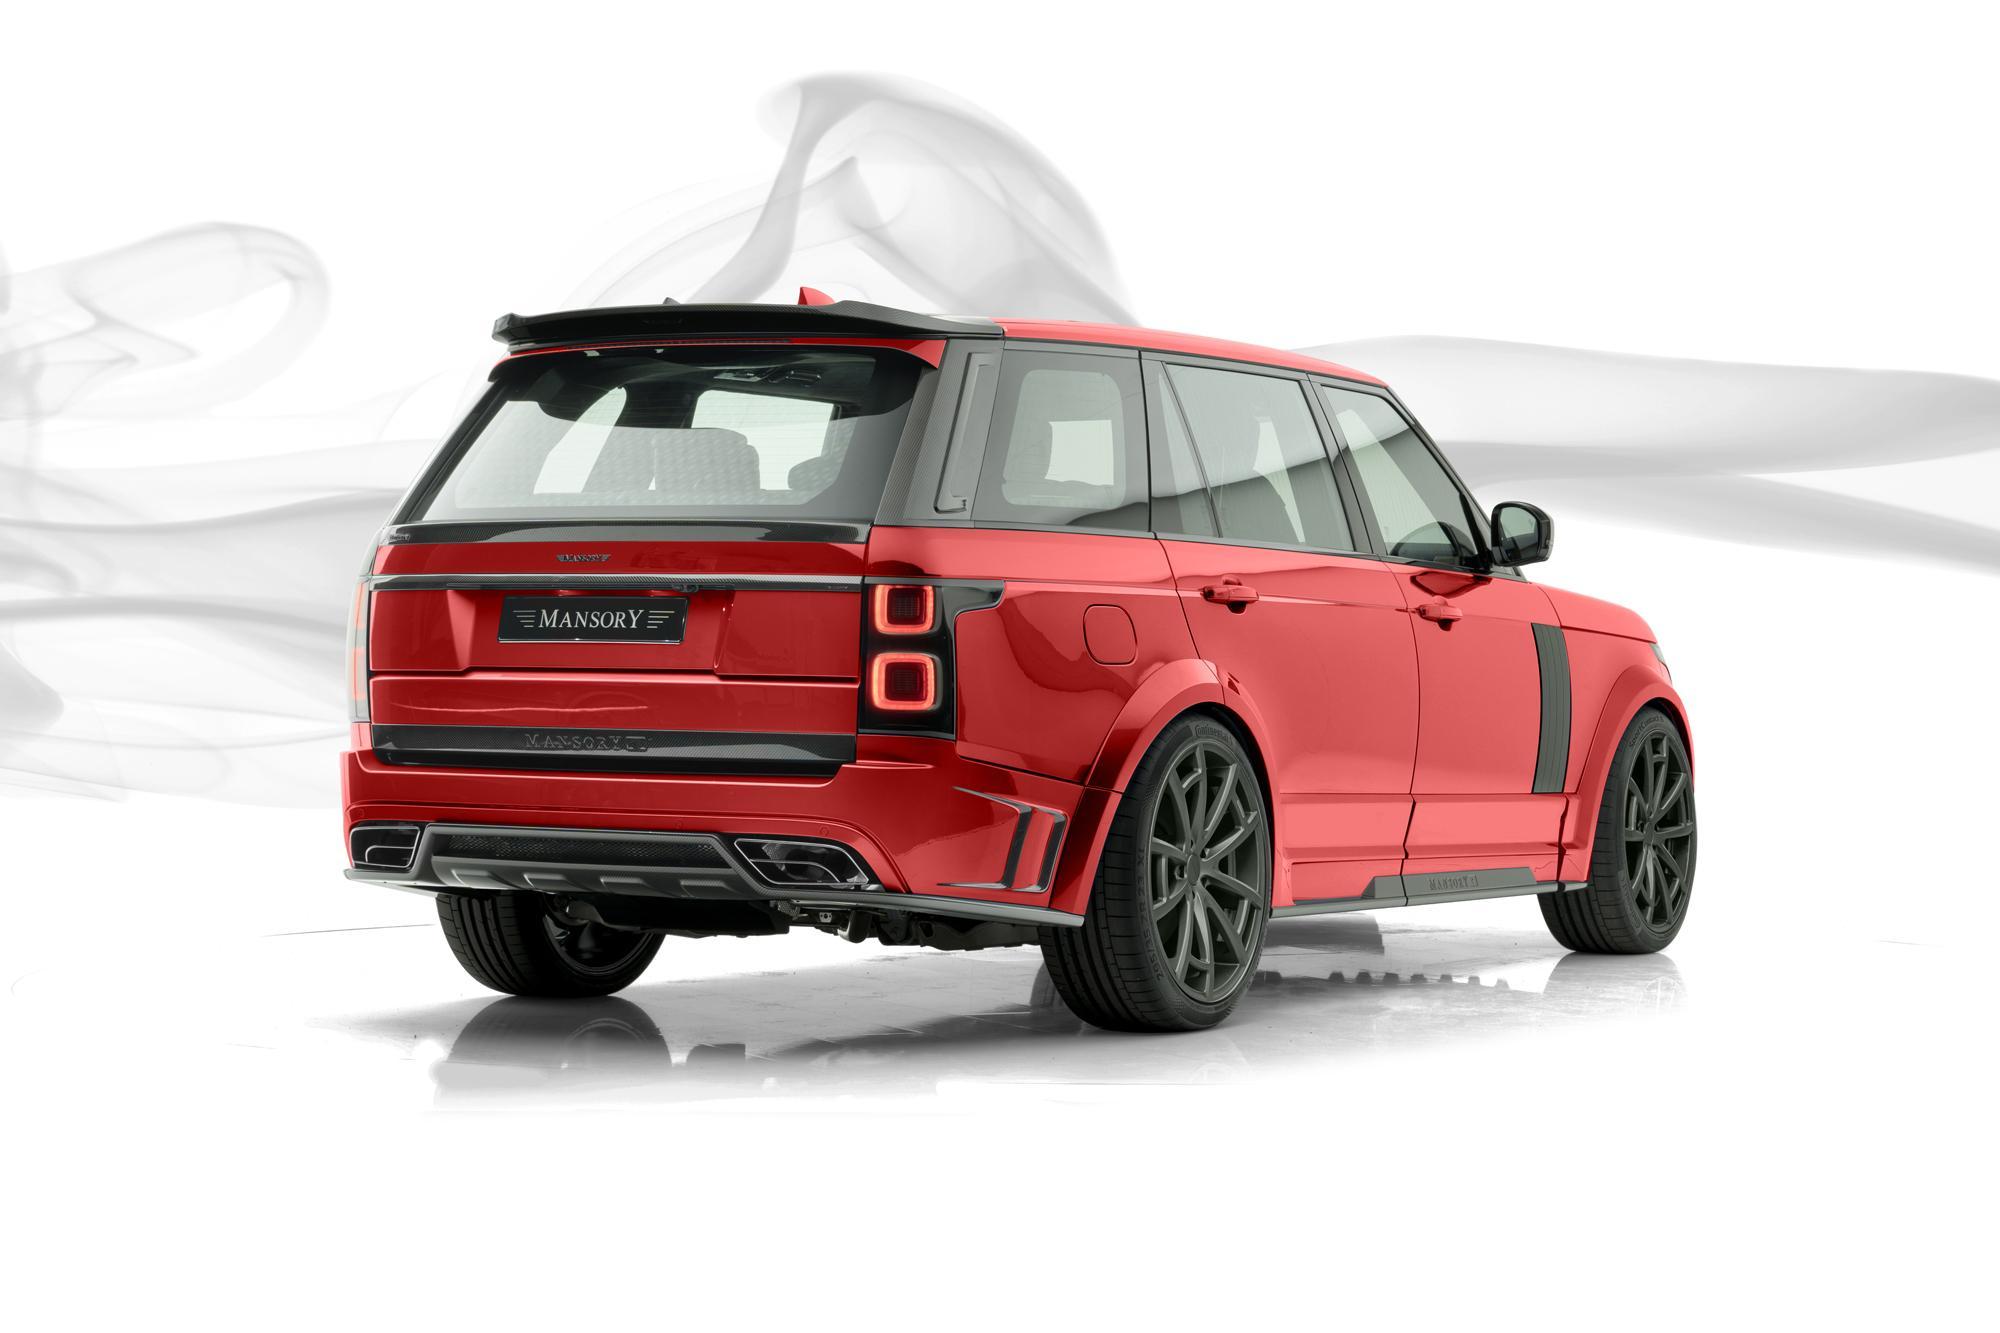 Mansory body kit for Range Rover latest model